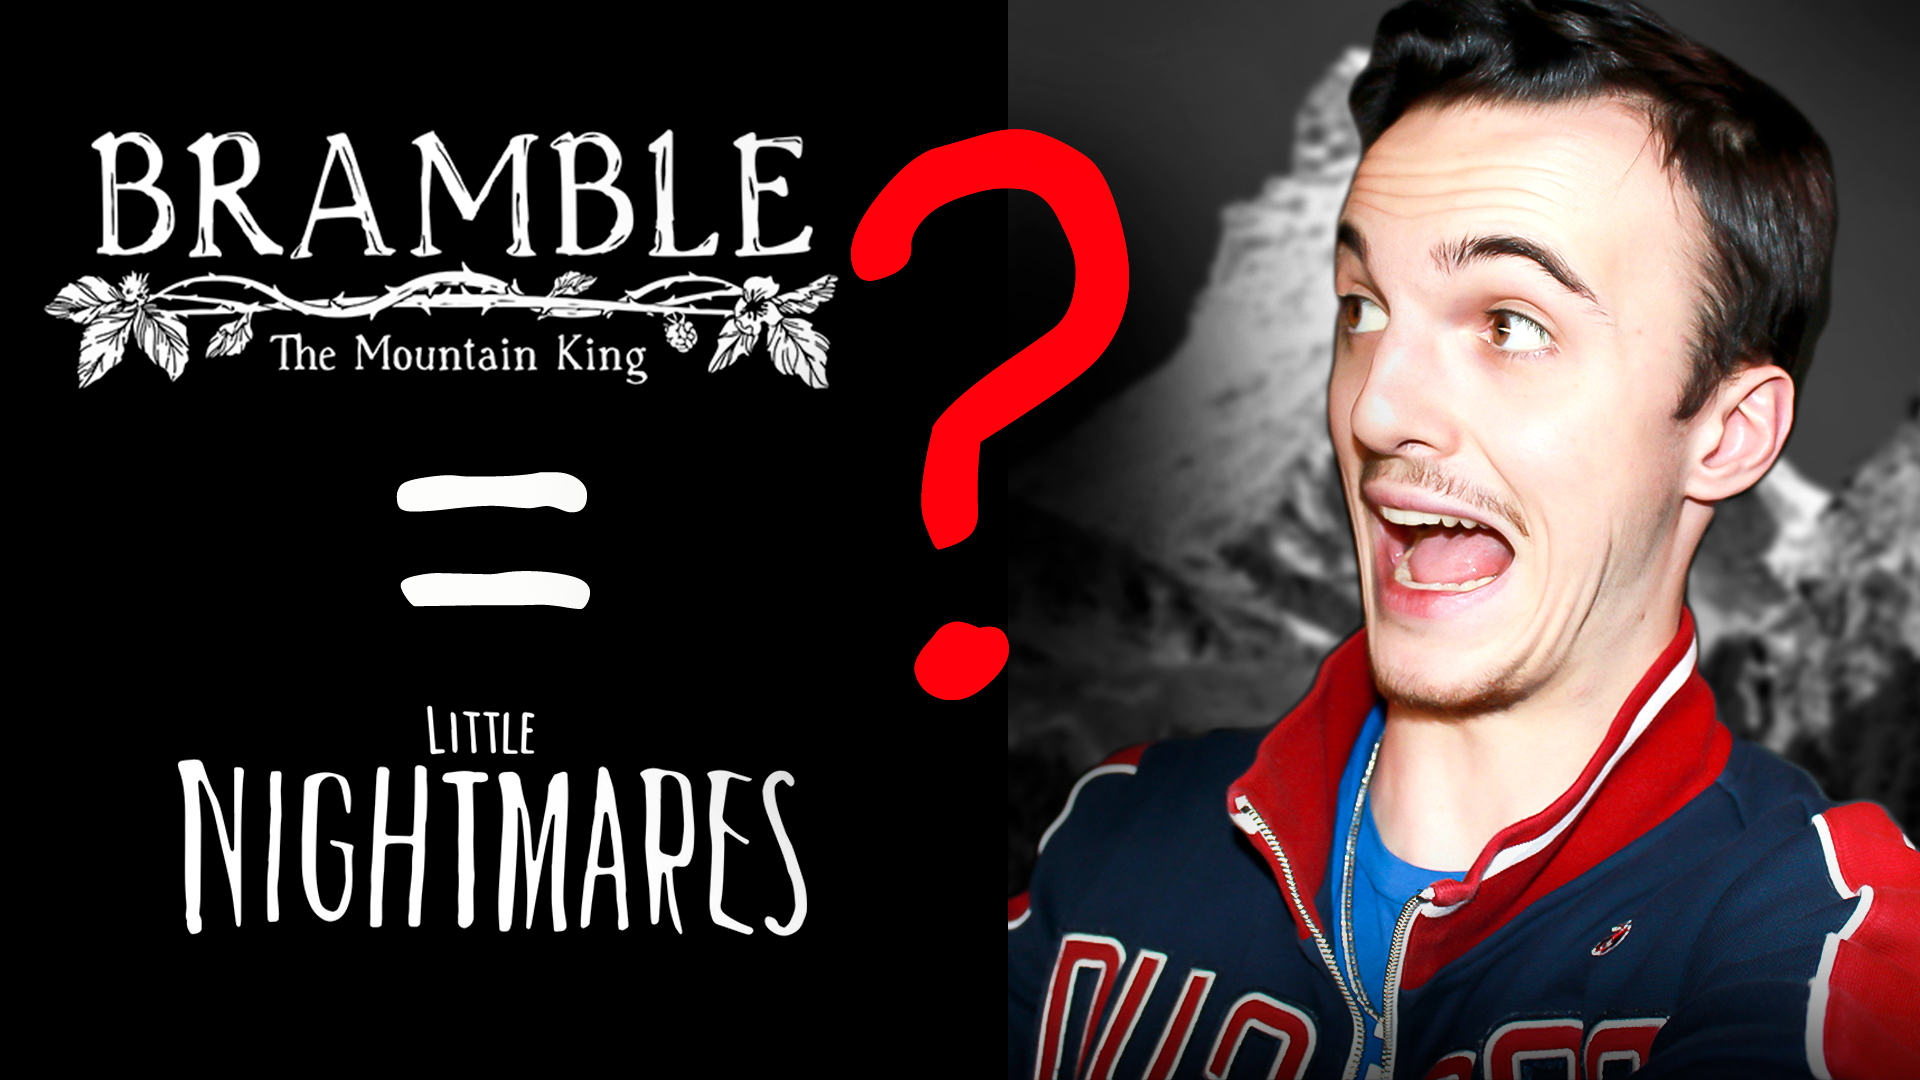 СТРАШНЕЕ, чем LITTLE NIGHTMARES ?/ BRAMBLE: The Mountain King #1